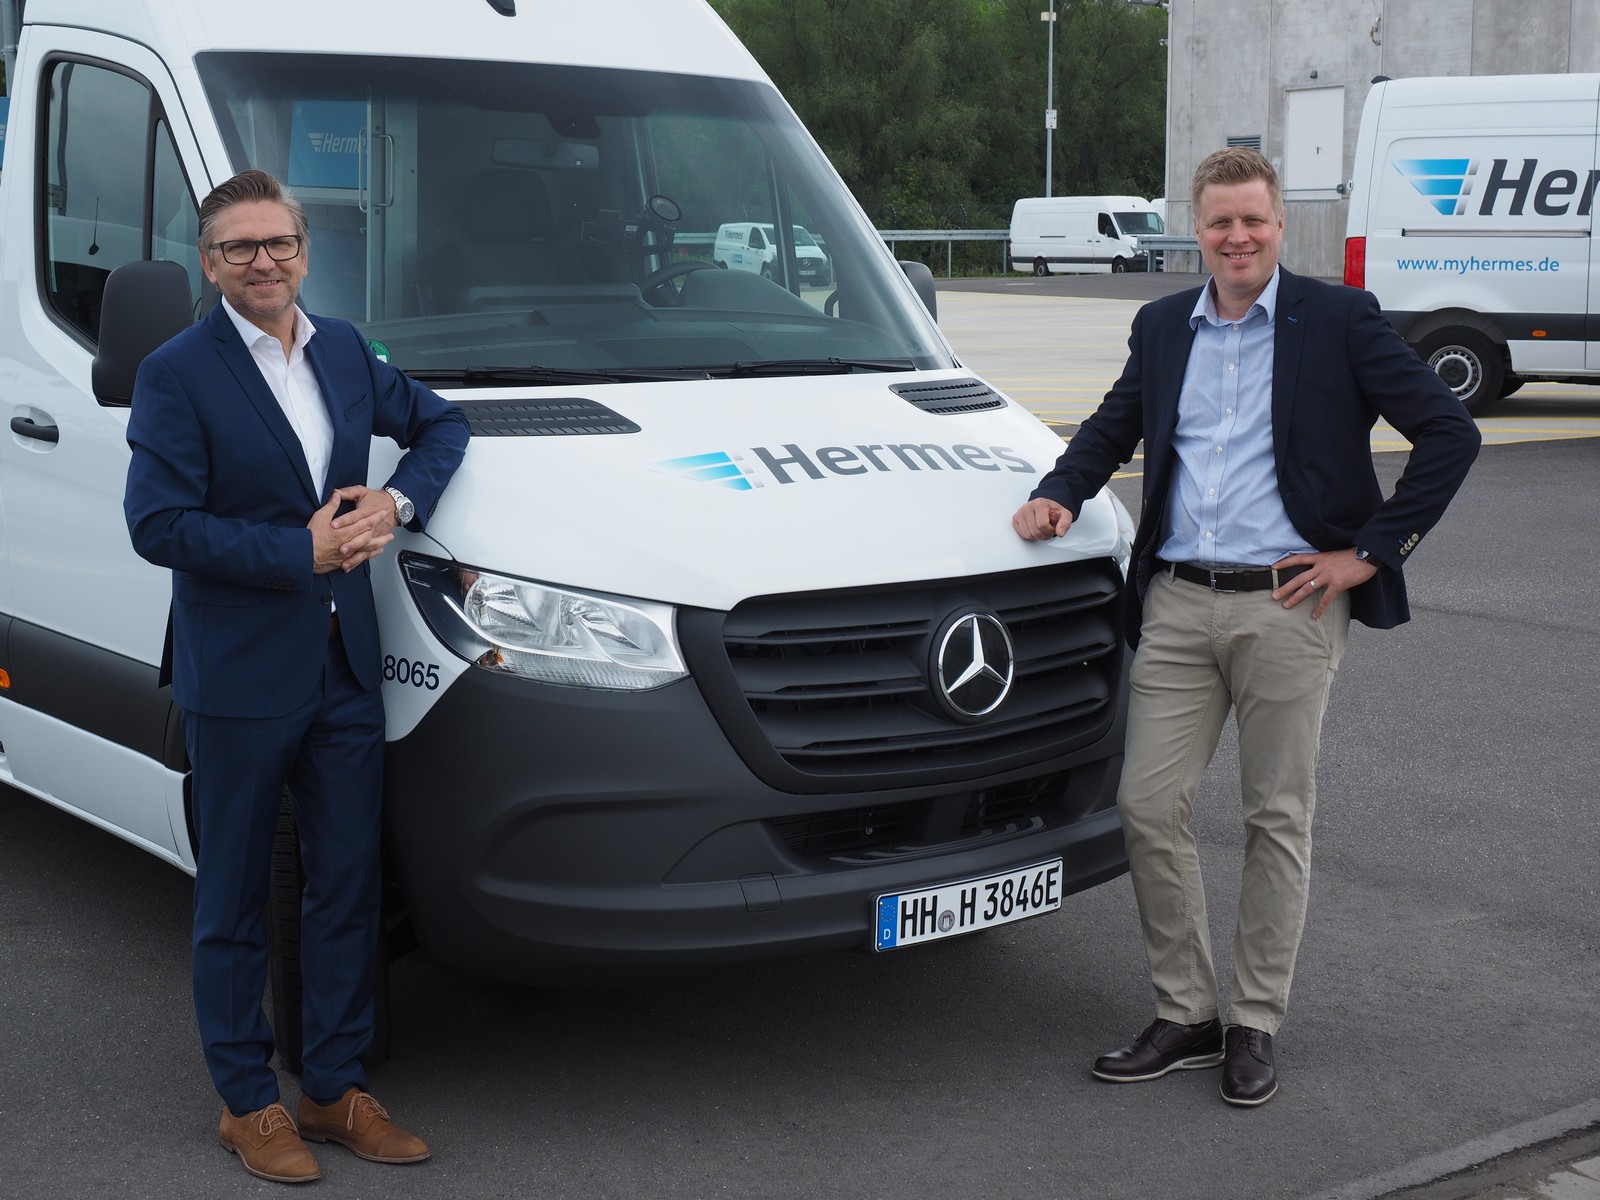 Marco Schlüter, Chief Operations Officer bei Hermes Germany (l.) übernimmt die ersten 15 E-Sprinter von Olaf Lubenau, Leiter Key-Account Management Mercedes-Benz Vans Vertrieb beim MercedesBenz Vertrieb Deutschland.